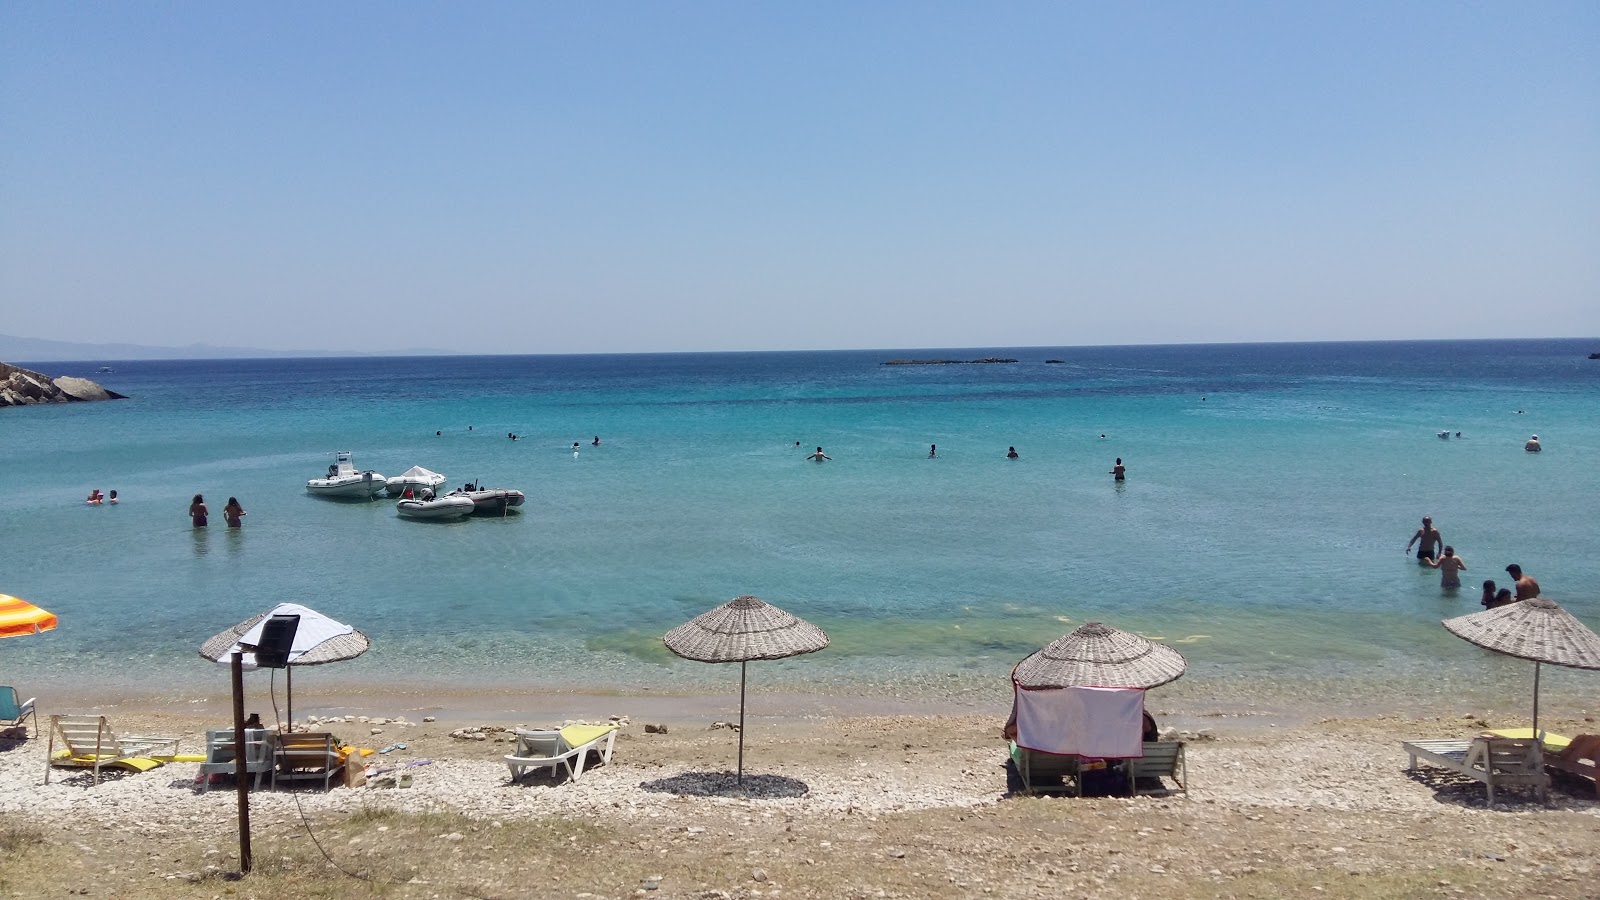 Foto av Demircili Plaj strandortområde